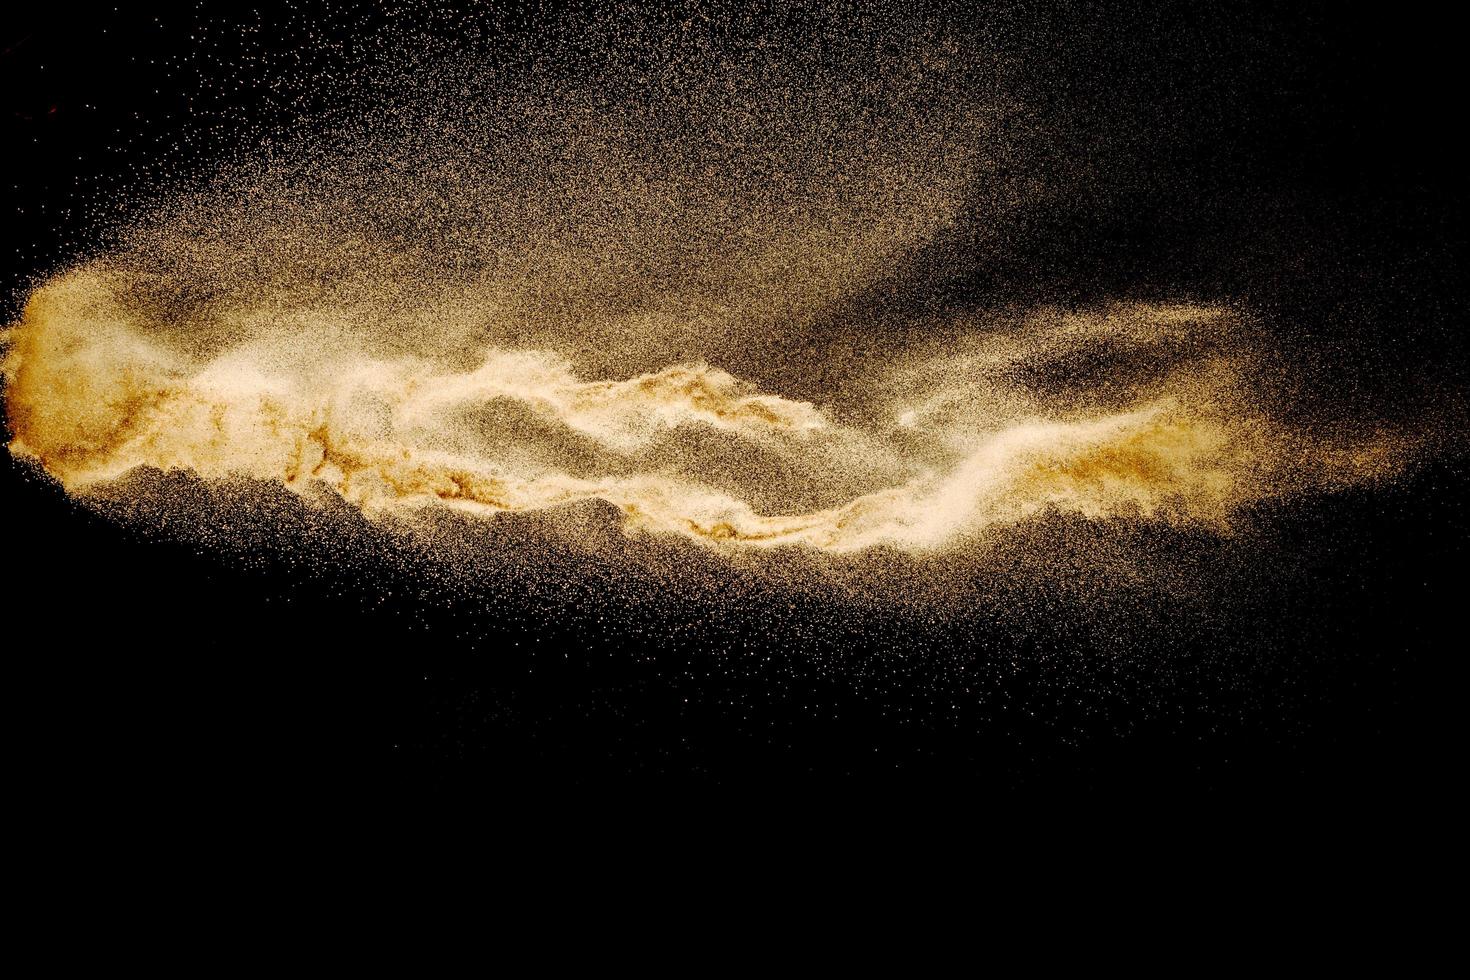 explosão de areia seca do rio isolada no fundo preto. areia abstrata cloud.brown respingo de areia colorido contra um fundo escuro. foto